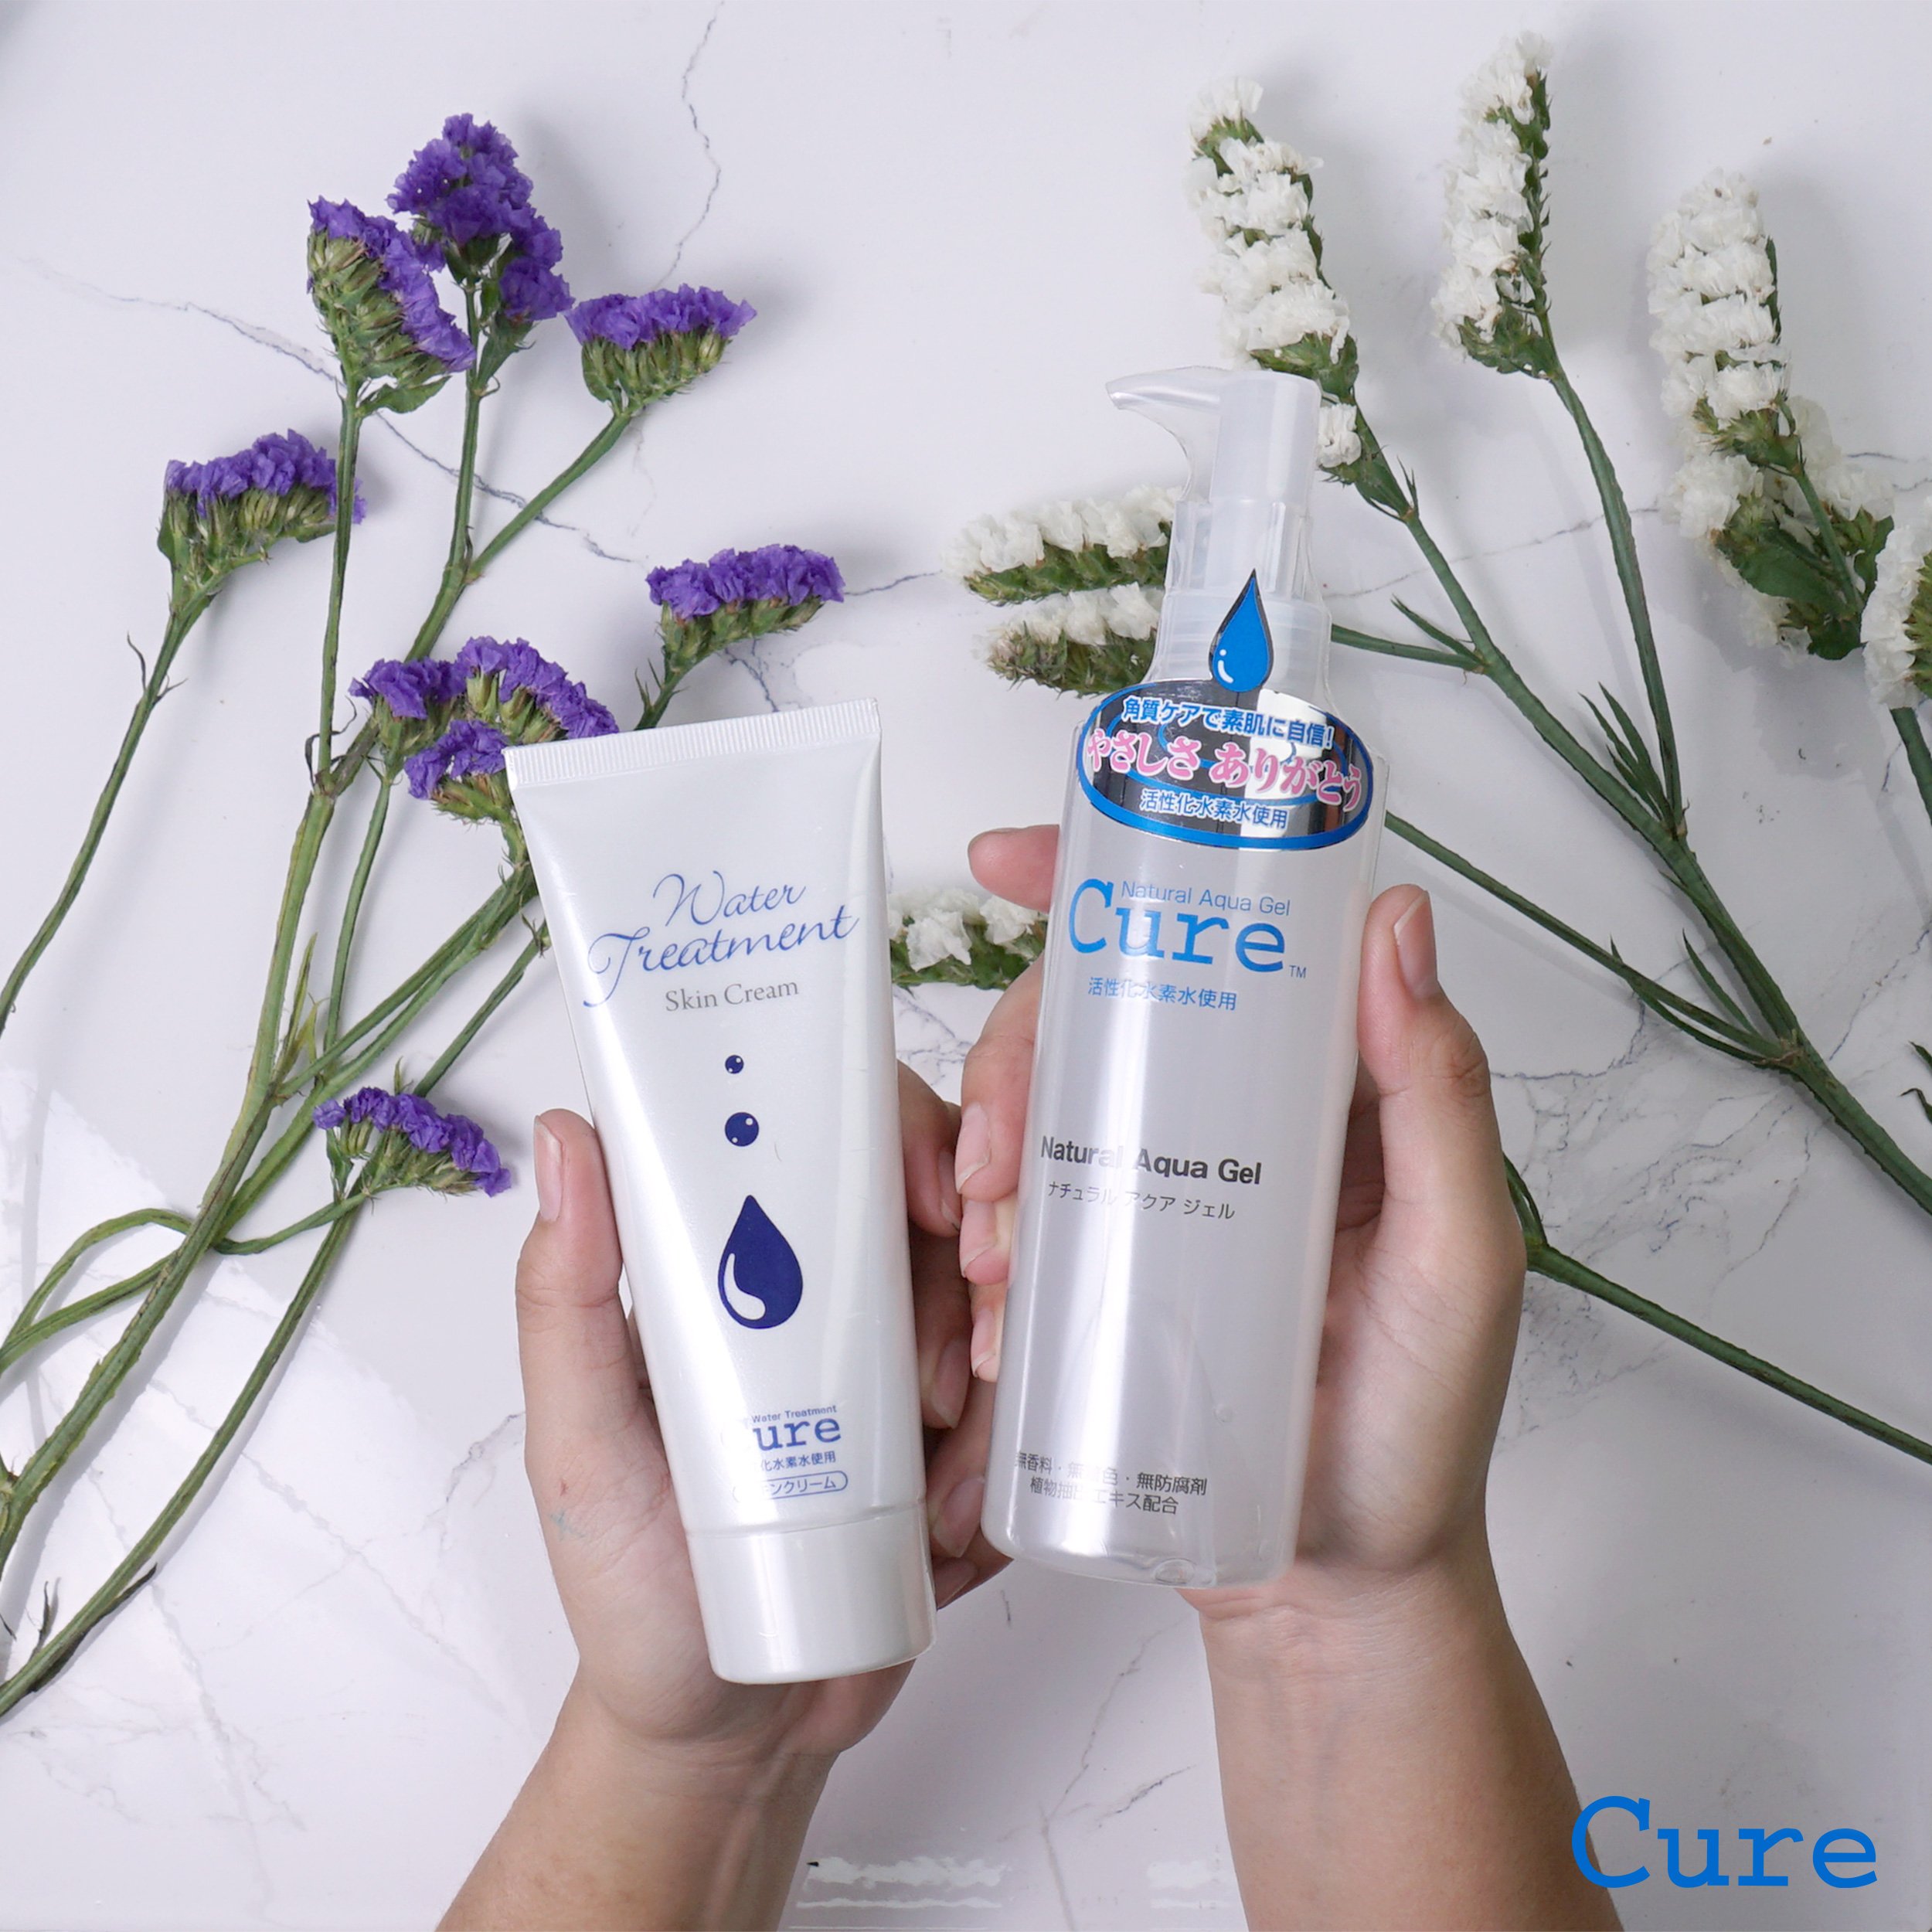 Cure Duo I Contains: Cure Natural Aqua Gel Exfoliator & Cure Water  Treatment Skin Cream